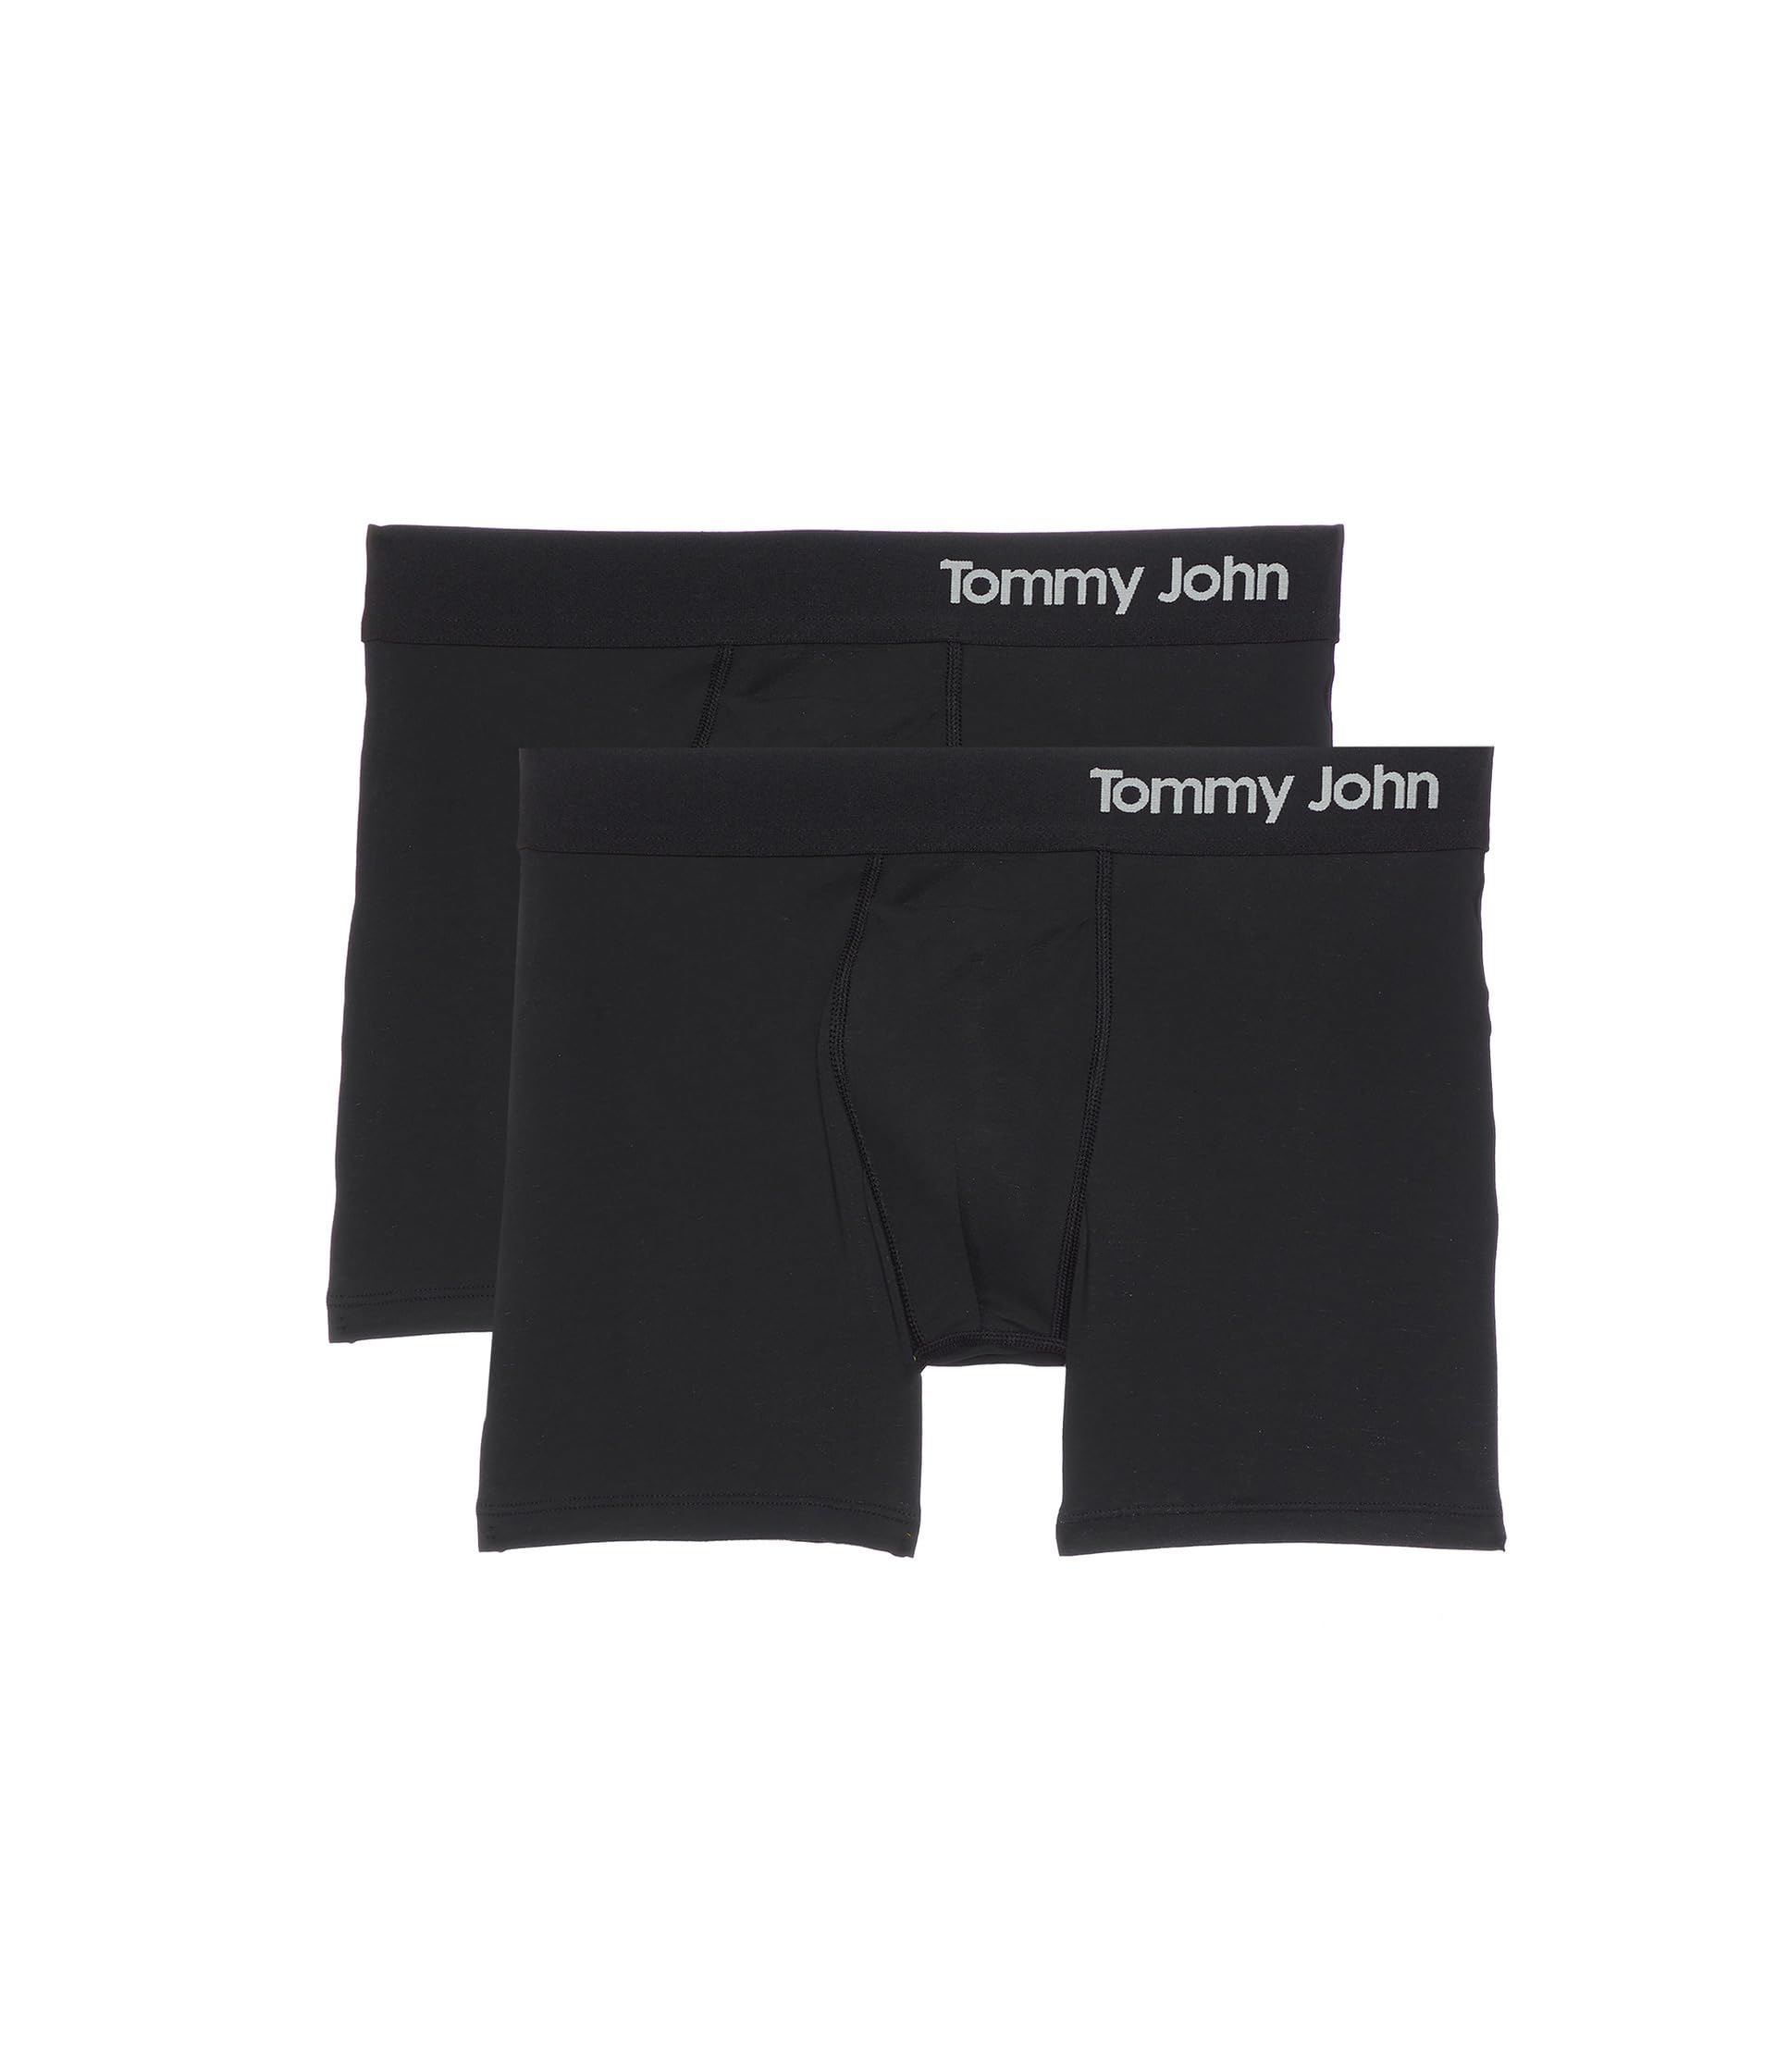 Комплект трусов-боксеров Cool из хлопка шириной 4 дюйма, 2 шт. Tommy John